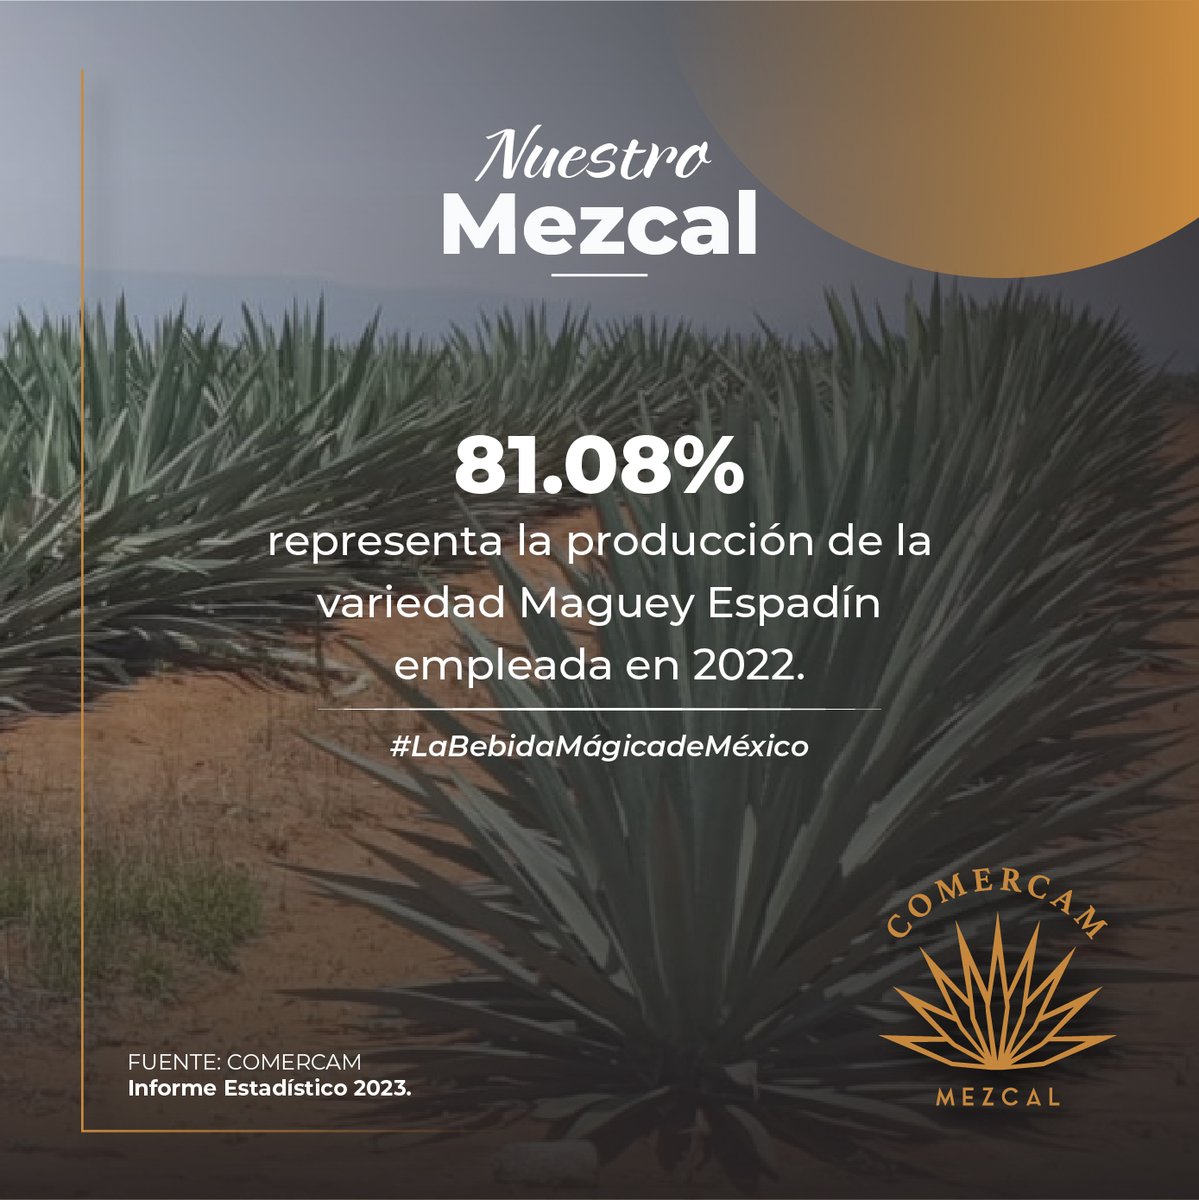 En el año 2022, la variedad de maguey Espadín destacó por ser la más utilizada en la producción de Mezcal, lidereando el 81.08% de la producción total. 
Informe 2023
comercam-dom.org.mx/estadisticas/

#NuestroMezcal #COMERCAM #Indicadores #Estadísticas #Oaxaca #México #Mezcal #DOM